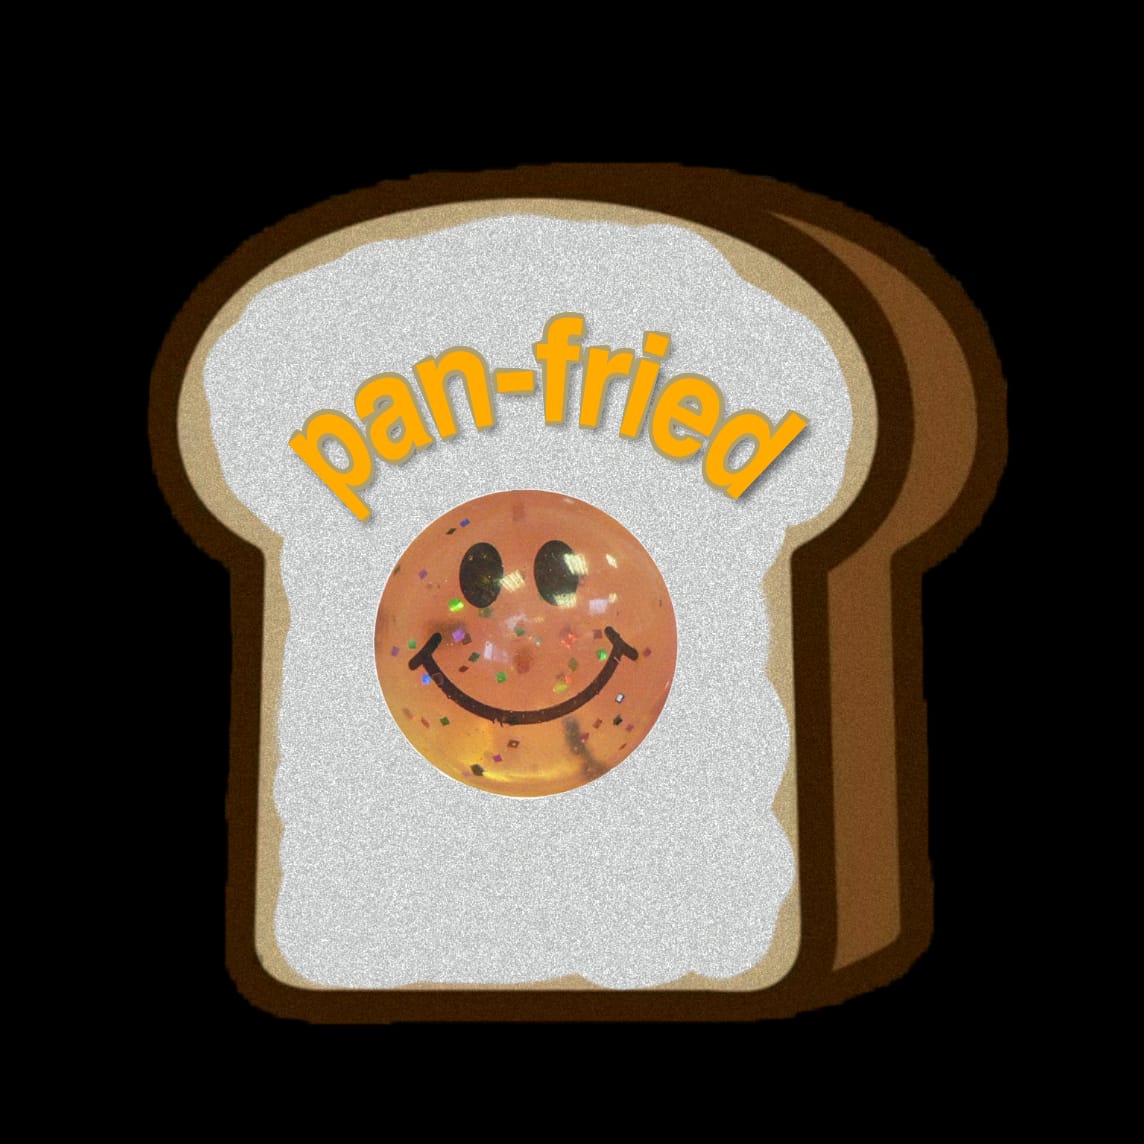 Pan-Fried